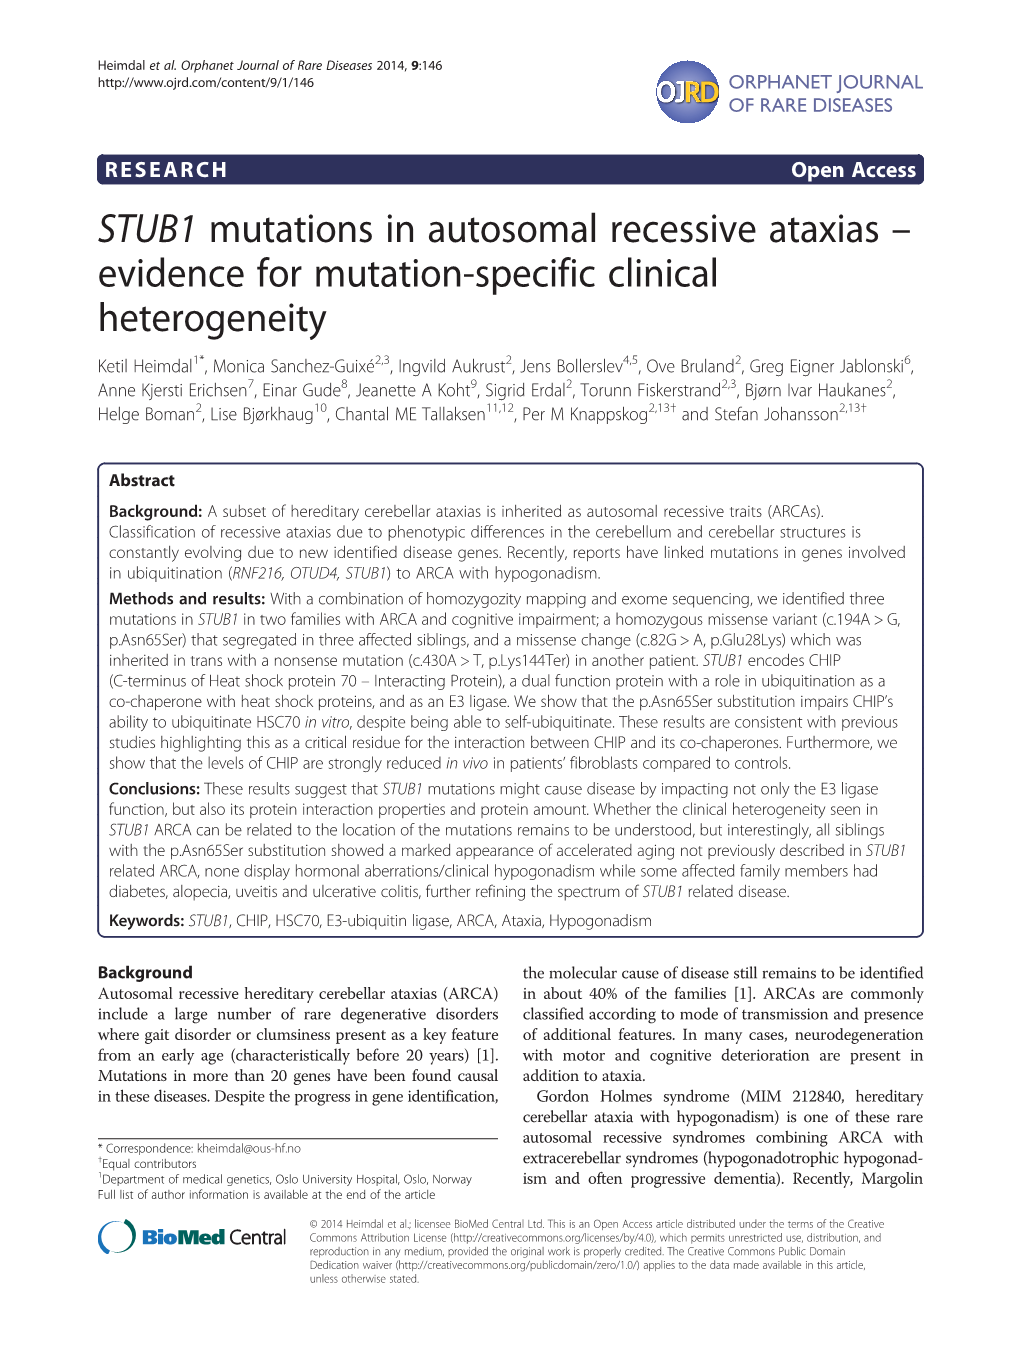 STUB1 Mutations in Autosomal Recessive Ataxias